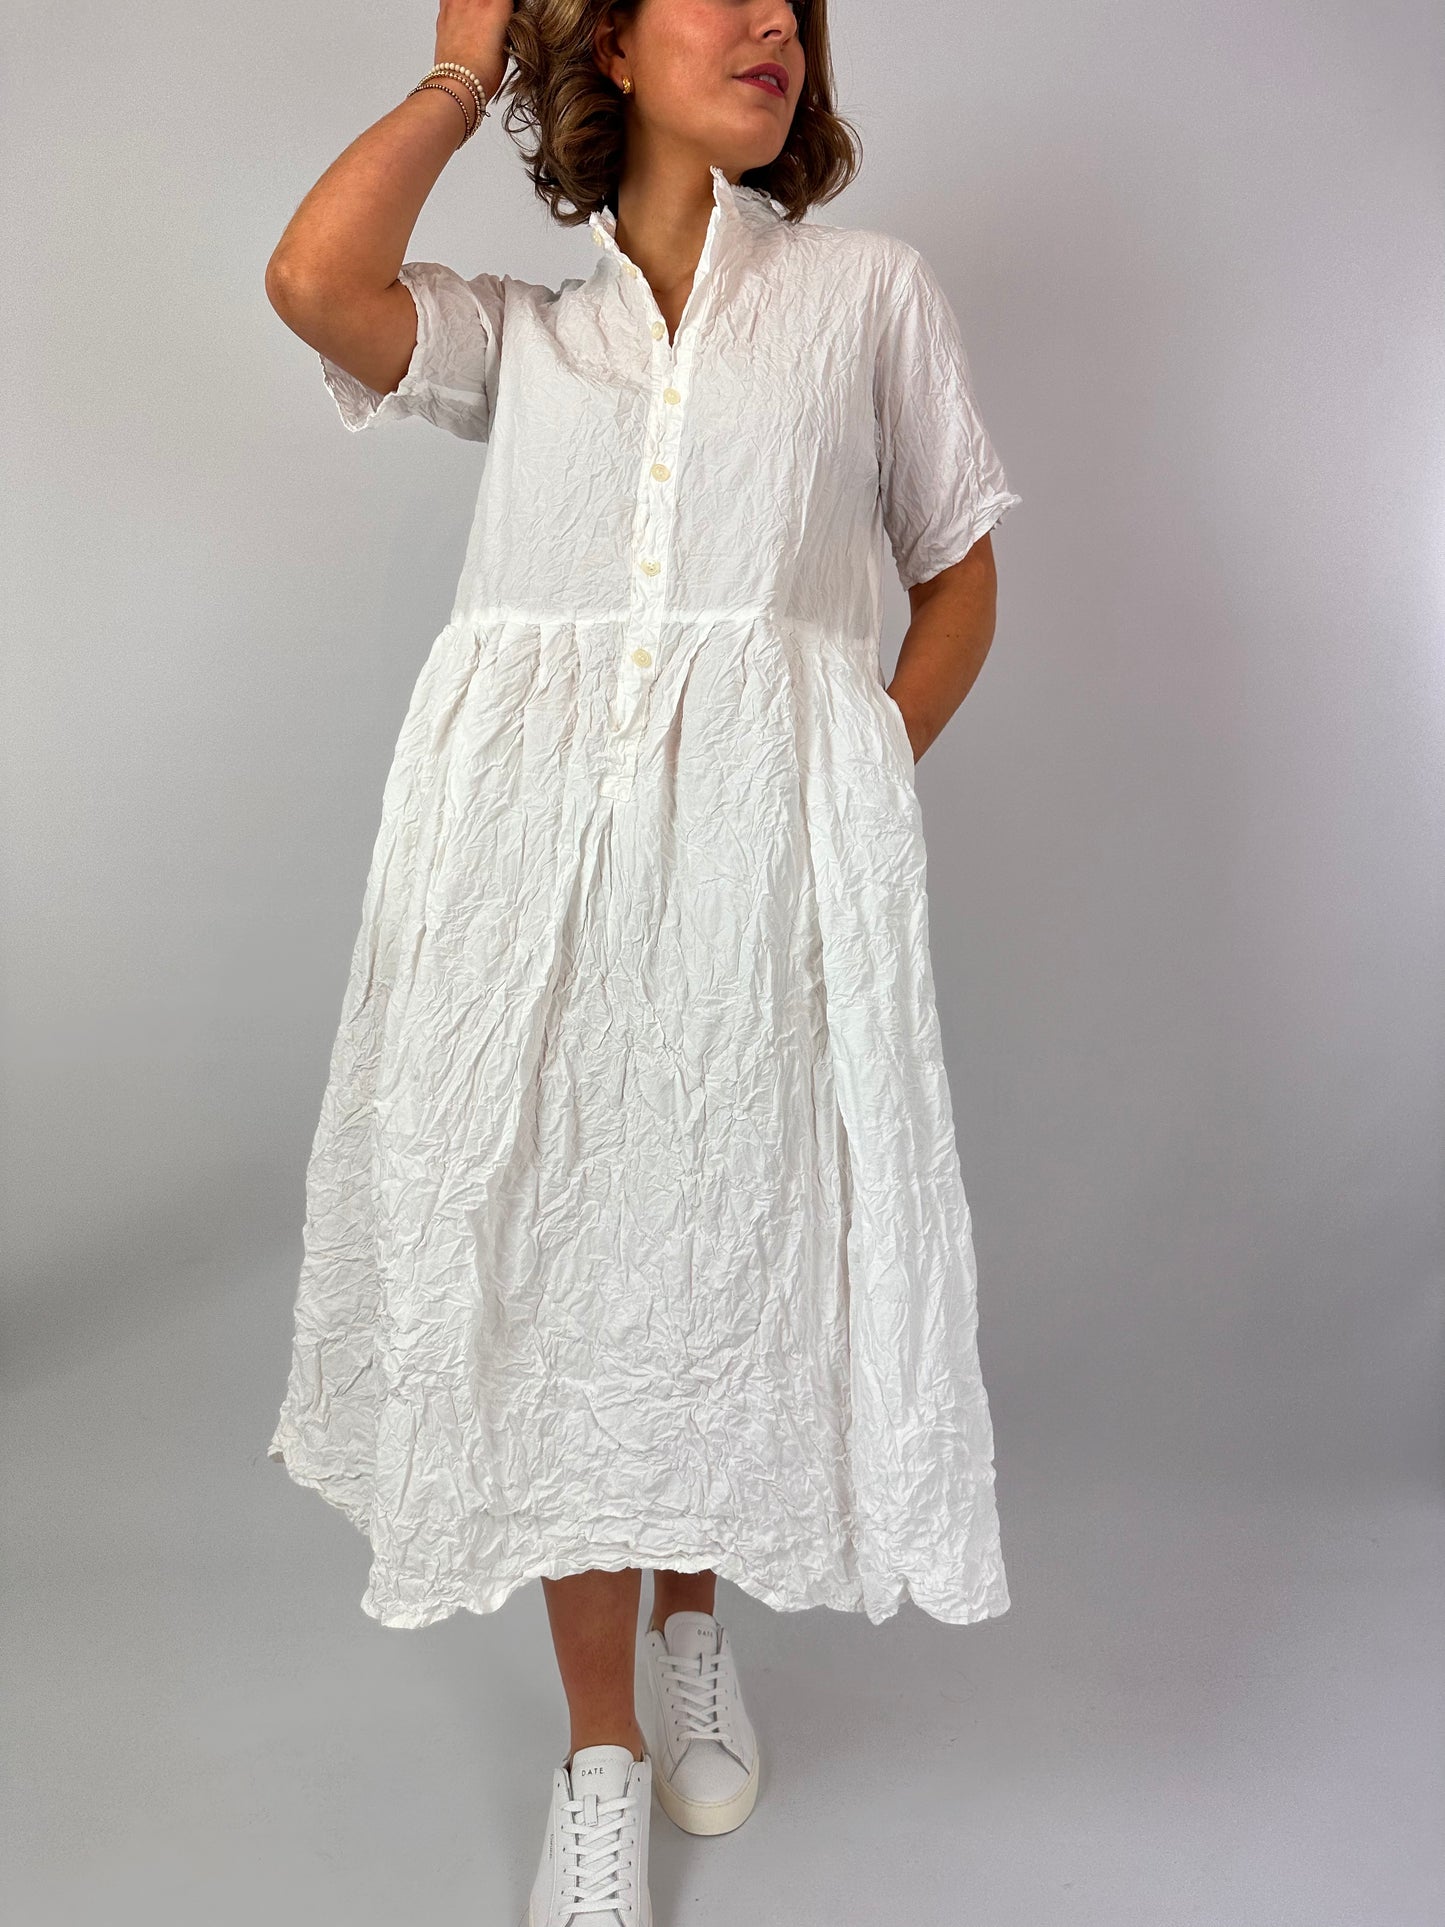 PDC 4370 Wine Dye Dress White